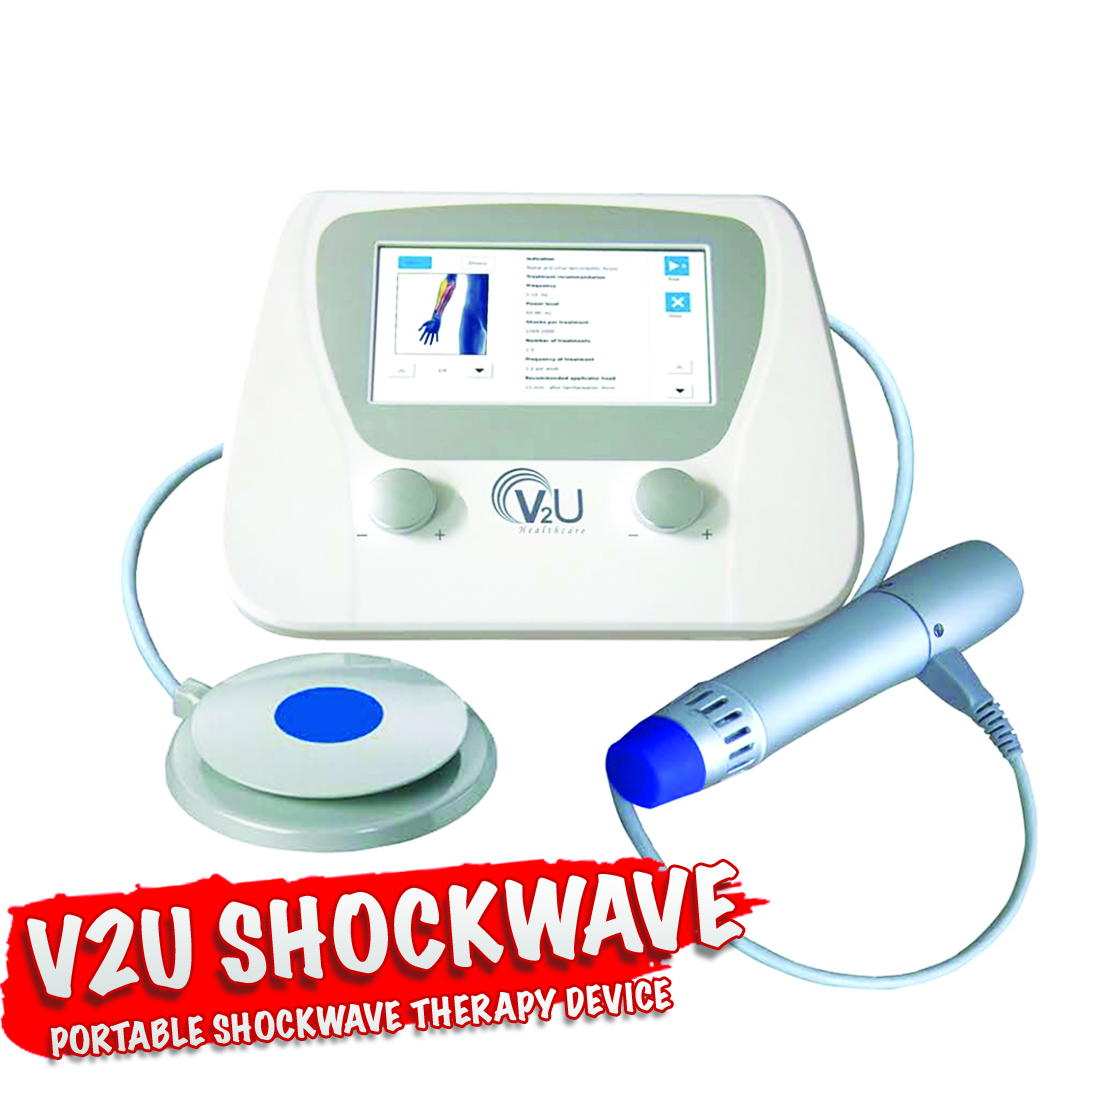 V2U Shockwave - Chattanooga Ultrasound 